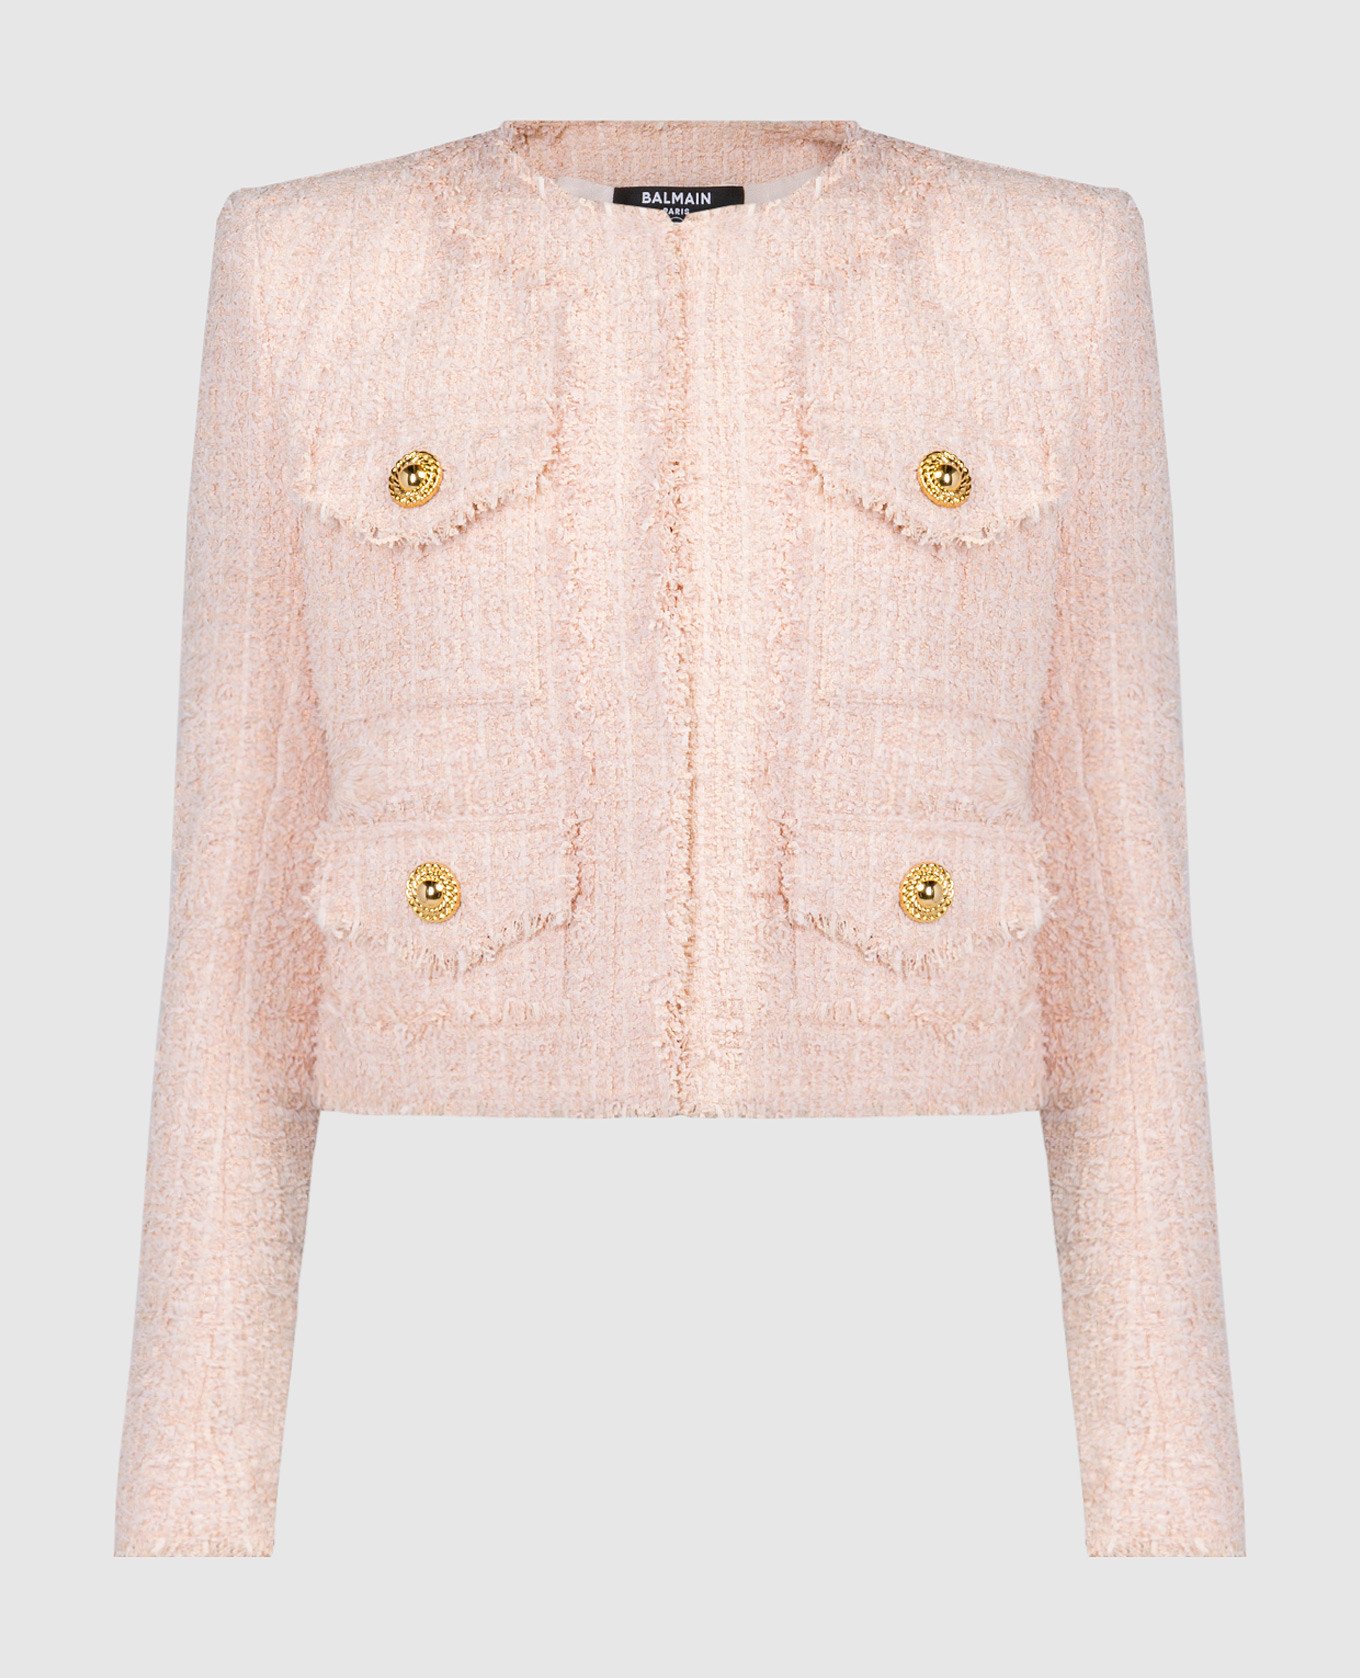 Pink tweed jacket